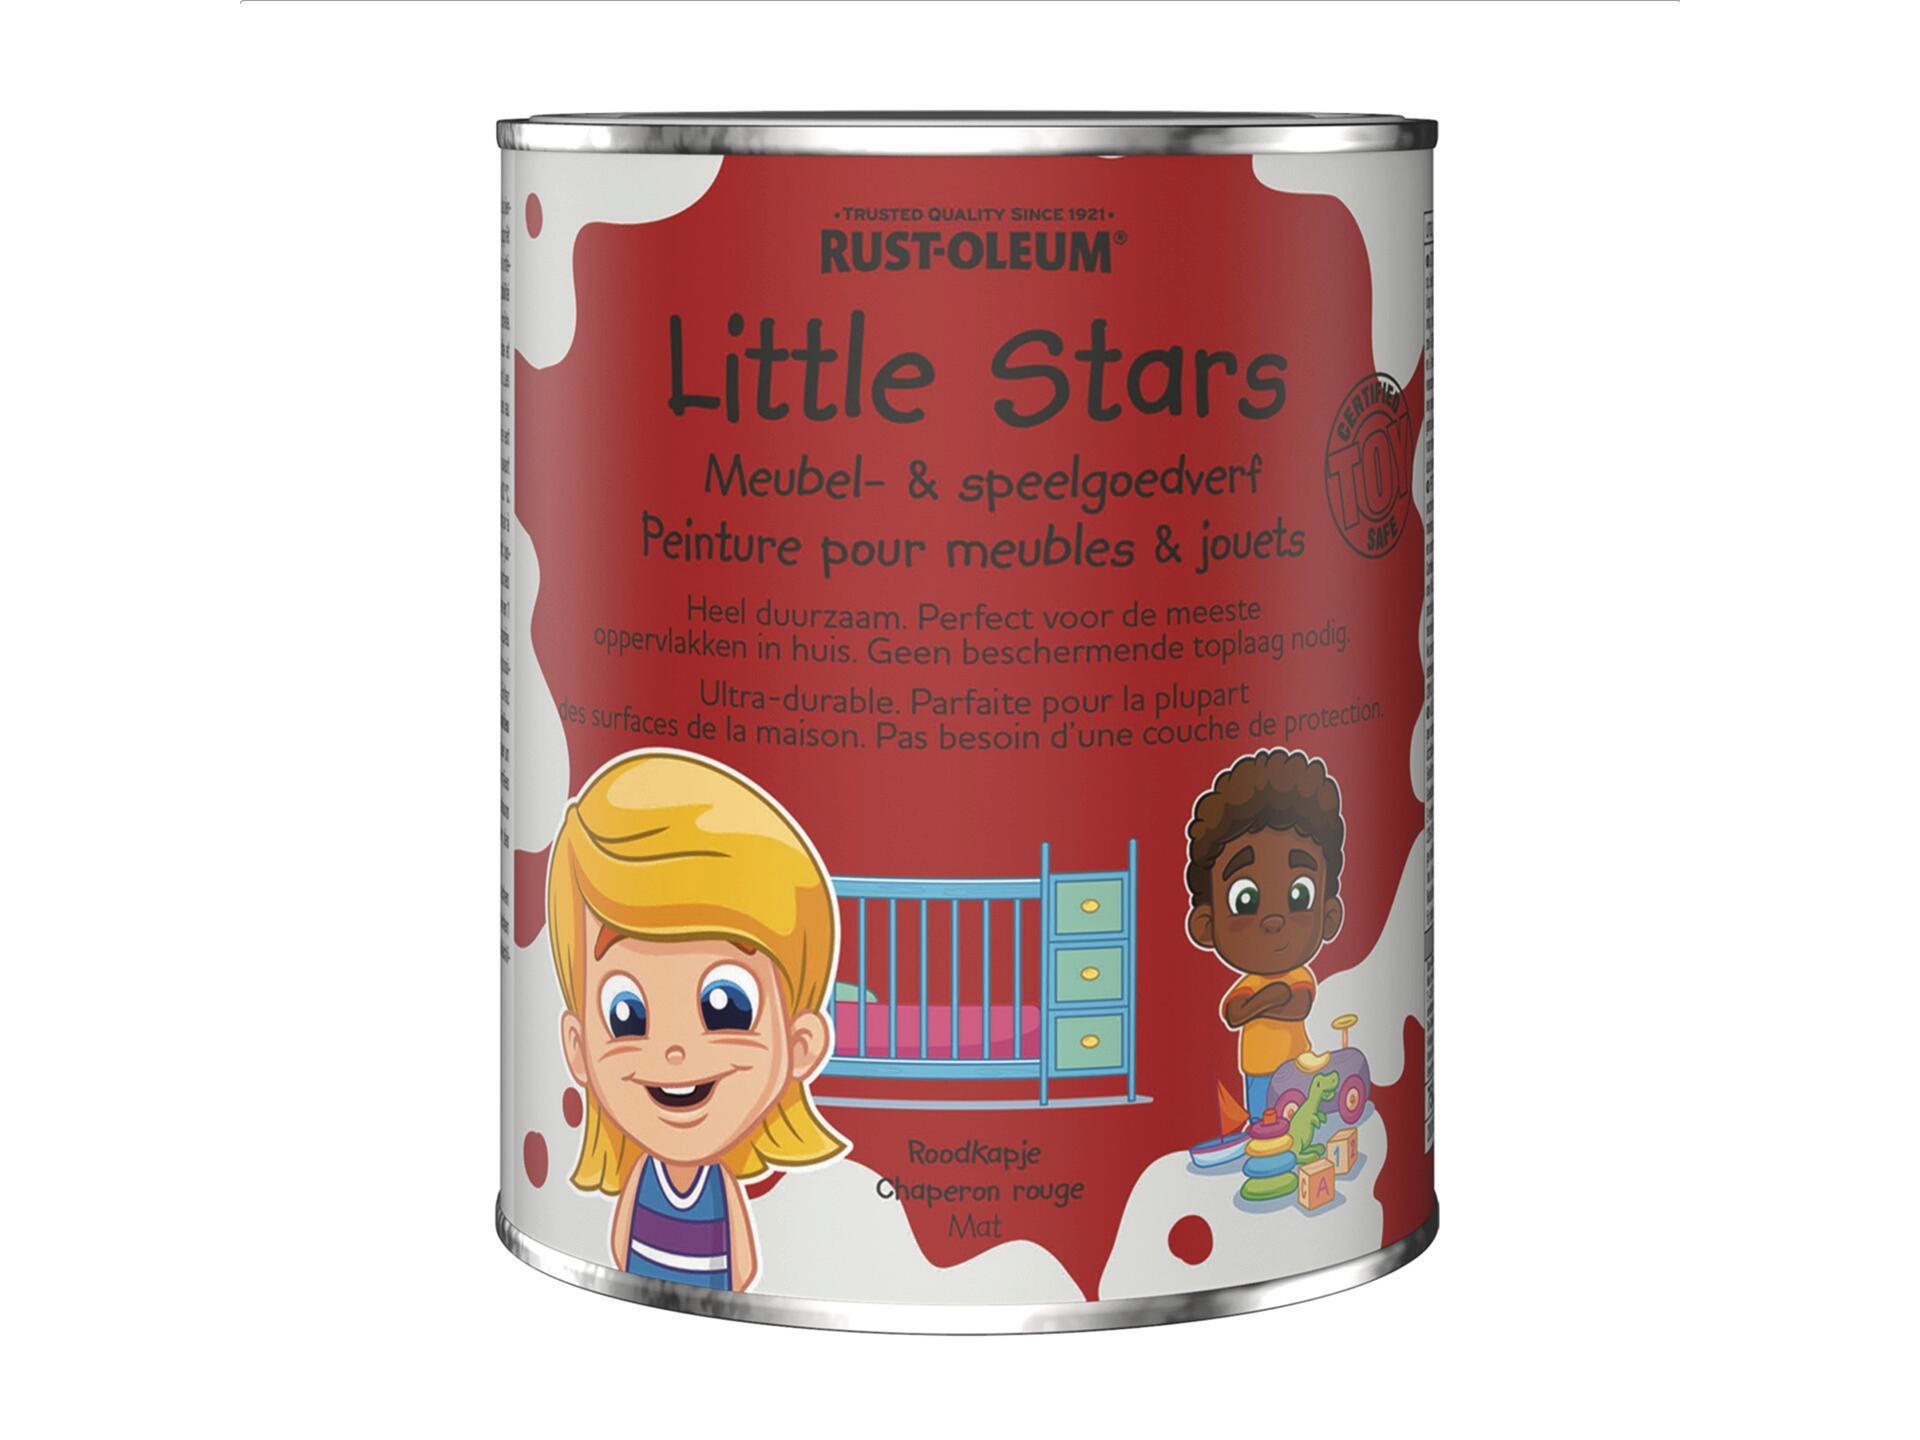 Rust-oleum Little Stars peinture pour meubles et jouets 750ml chaperone rouge